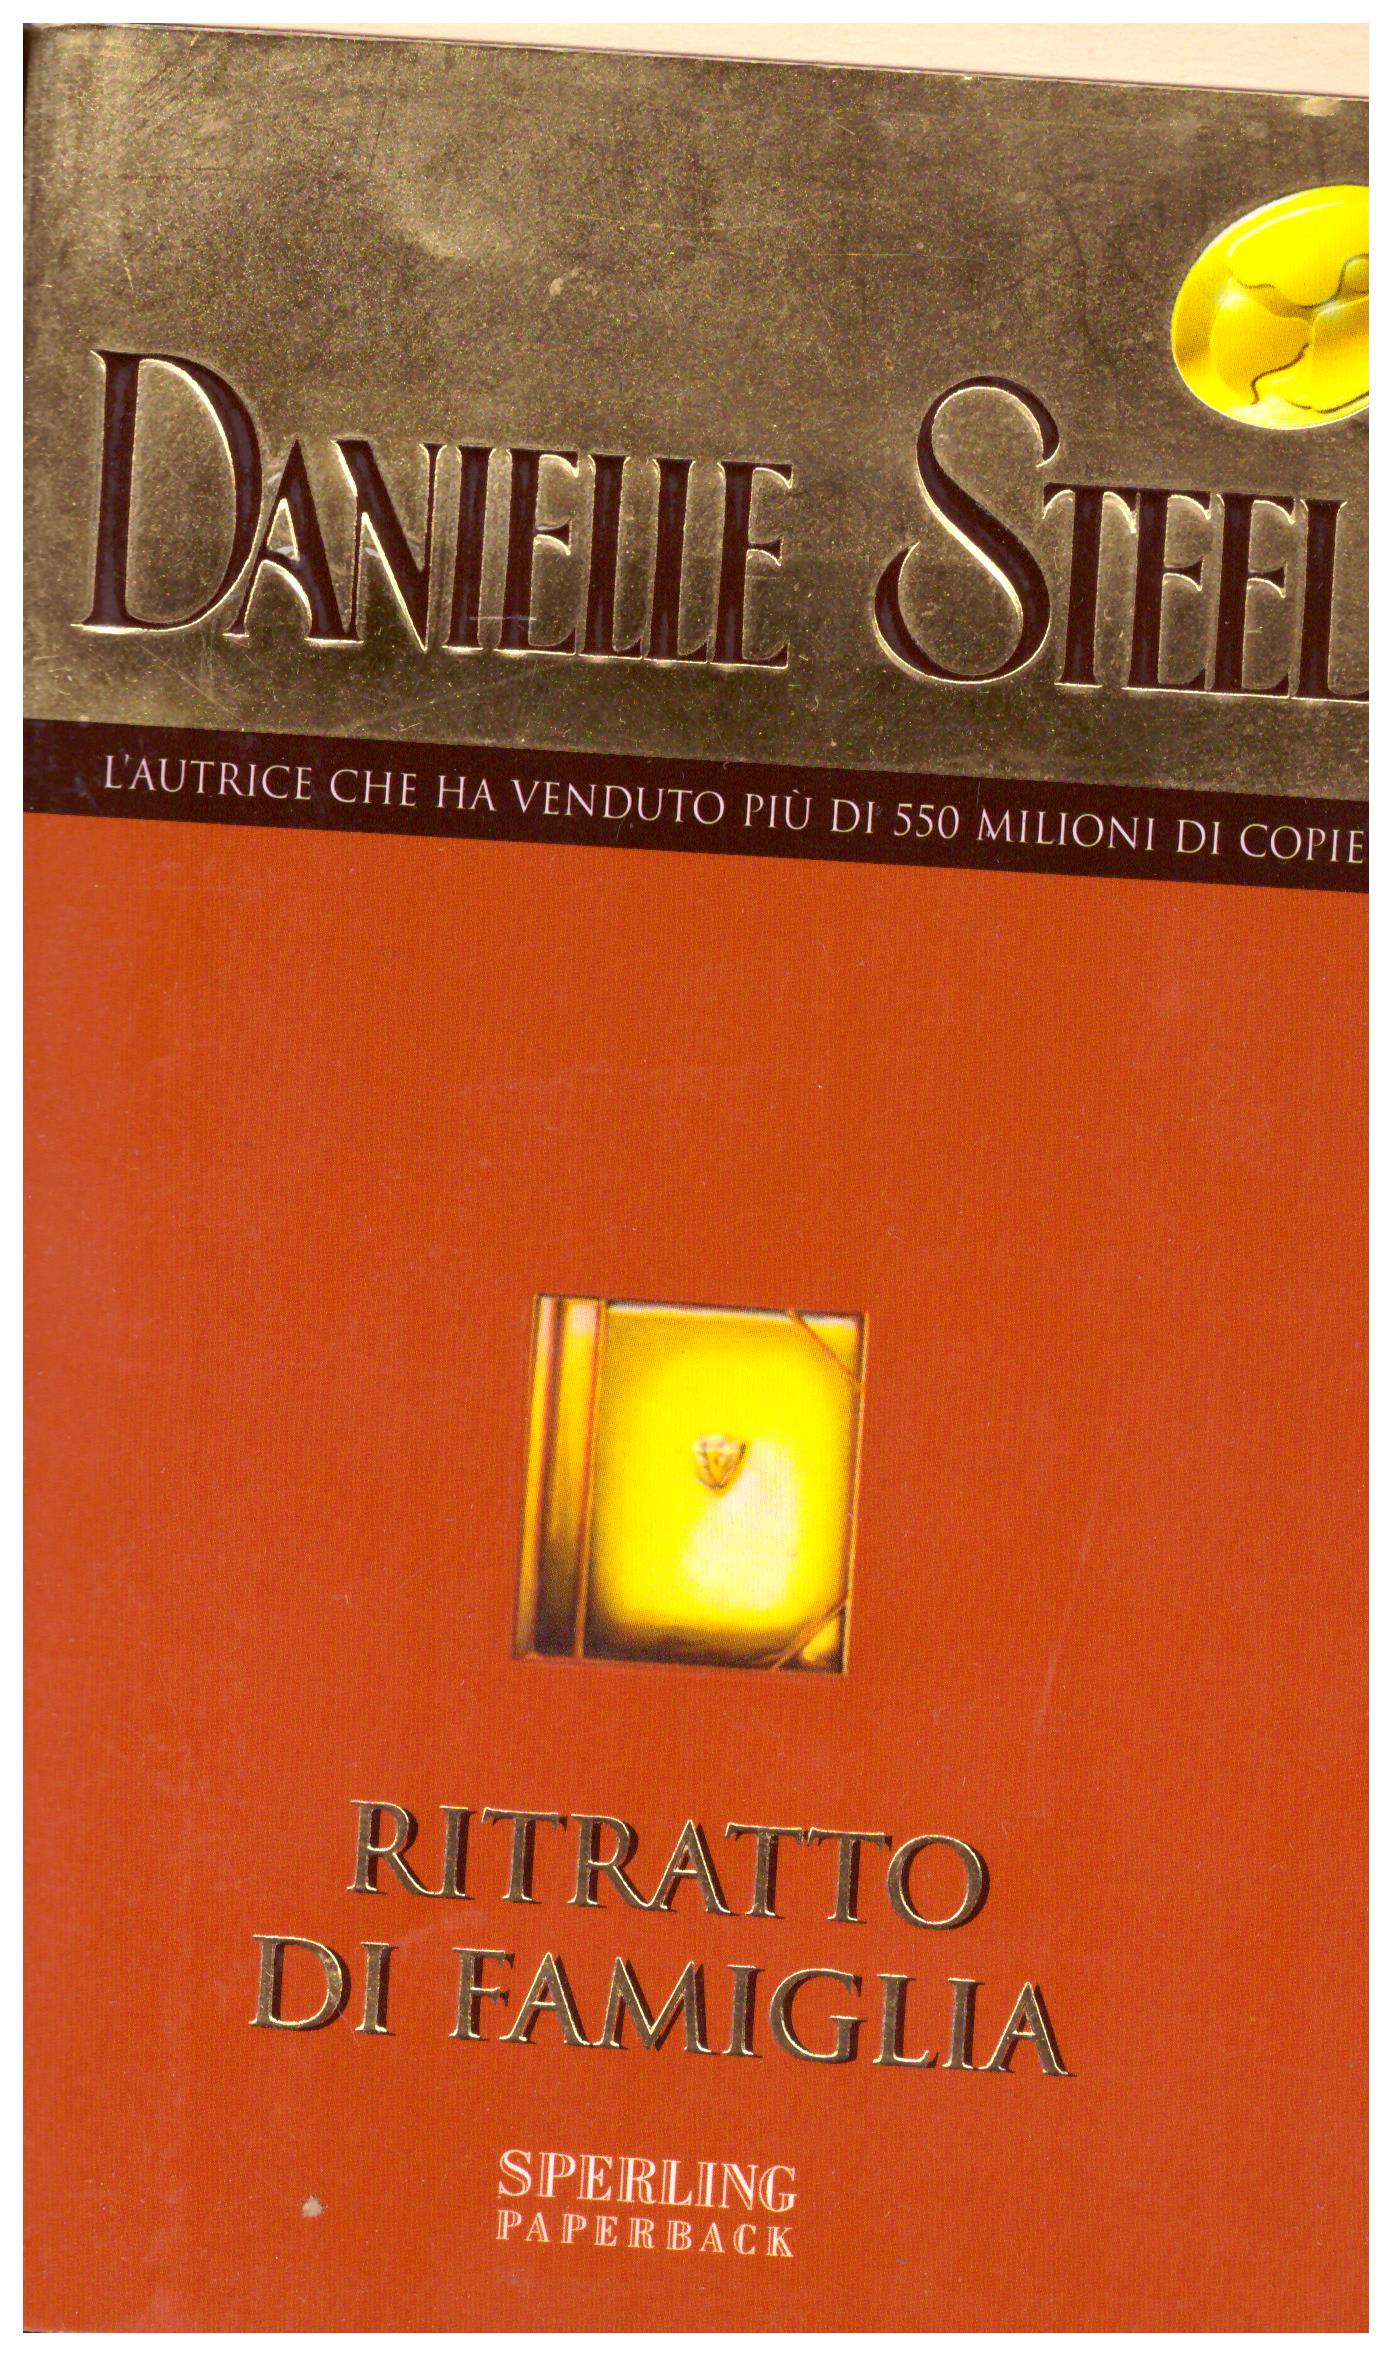 Titolo: Ritratto di famiglia  Autore: Danielle Steel  Editore: Sperling paperback, 2007